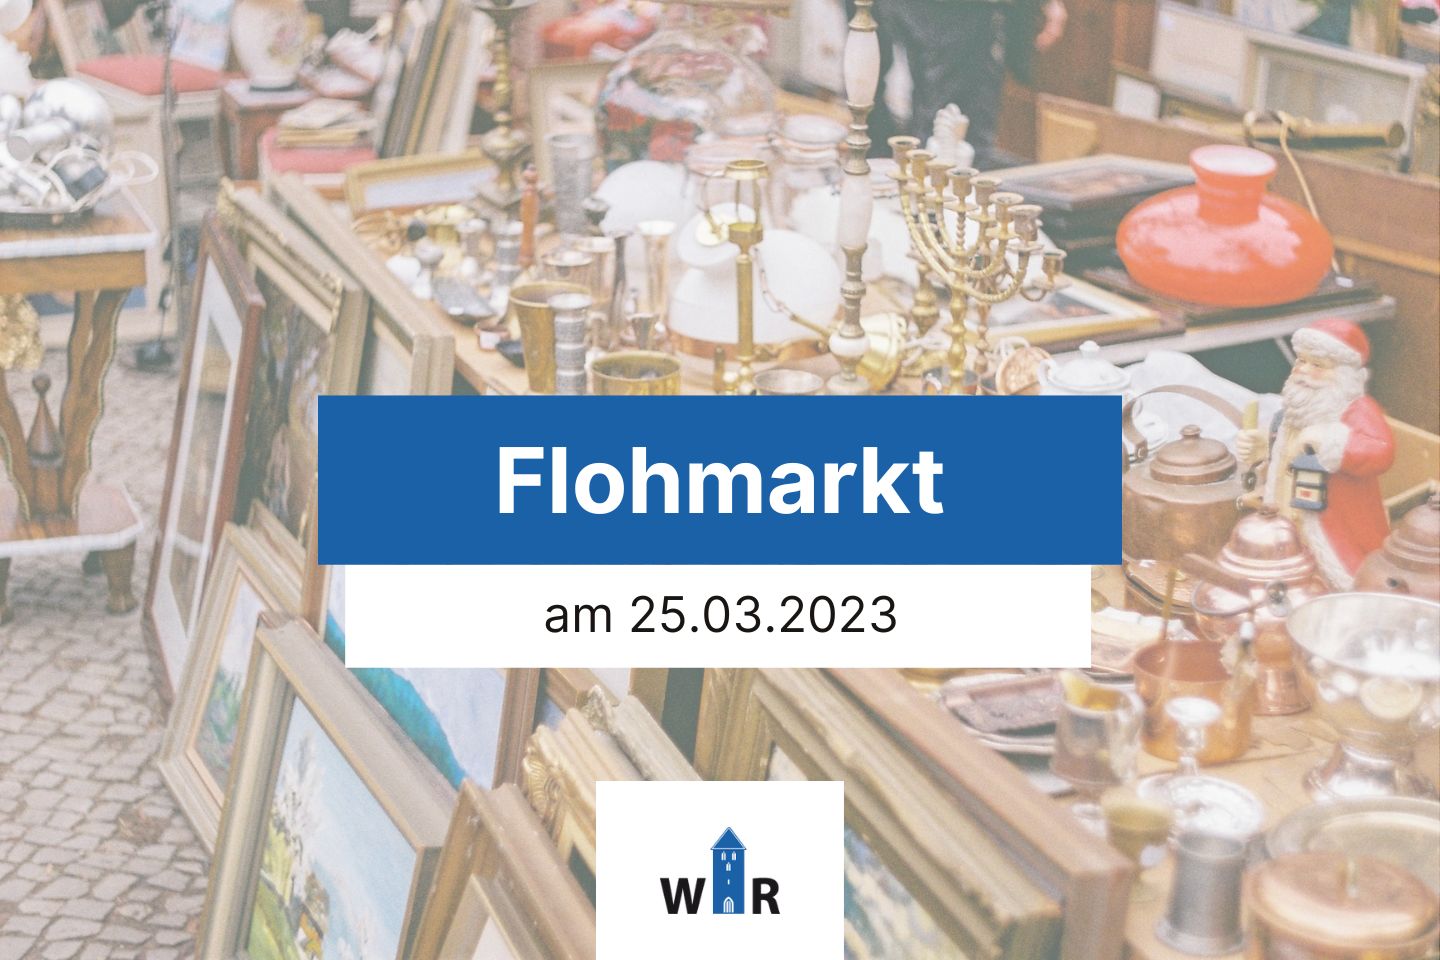 Flohmarkt am 25.03.2023 in Recke - WIR Recke